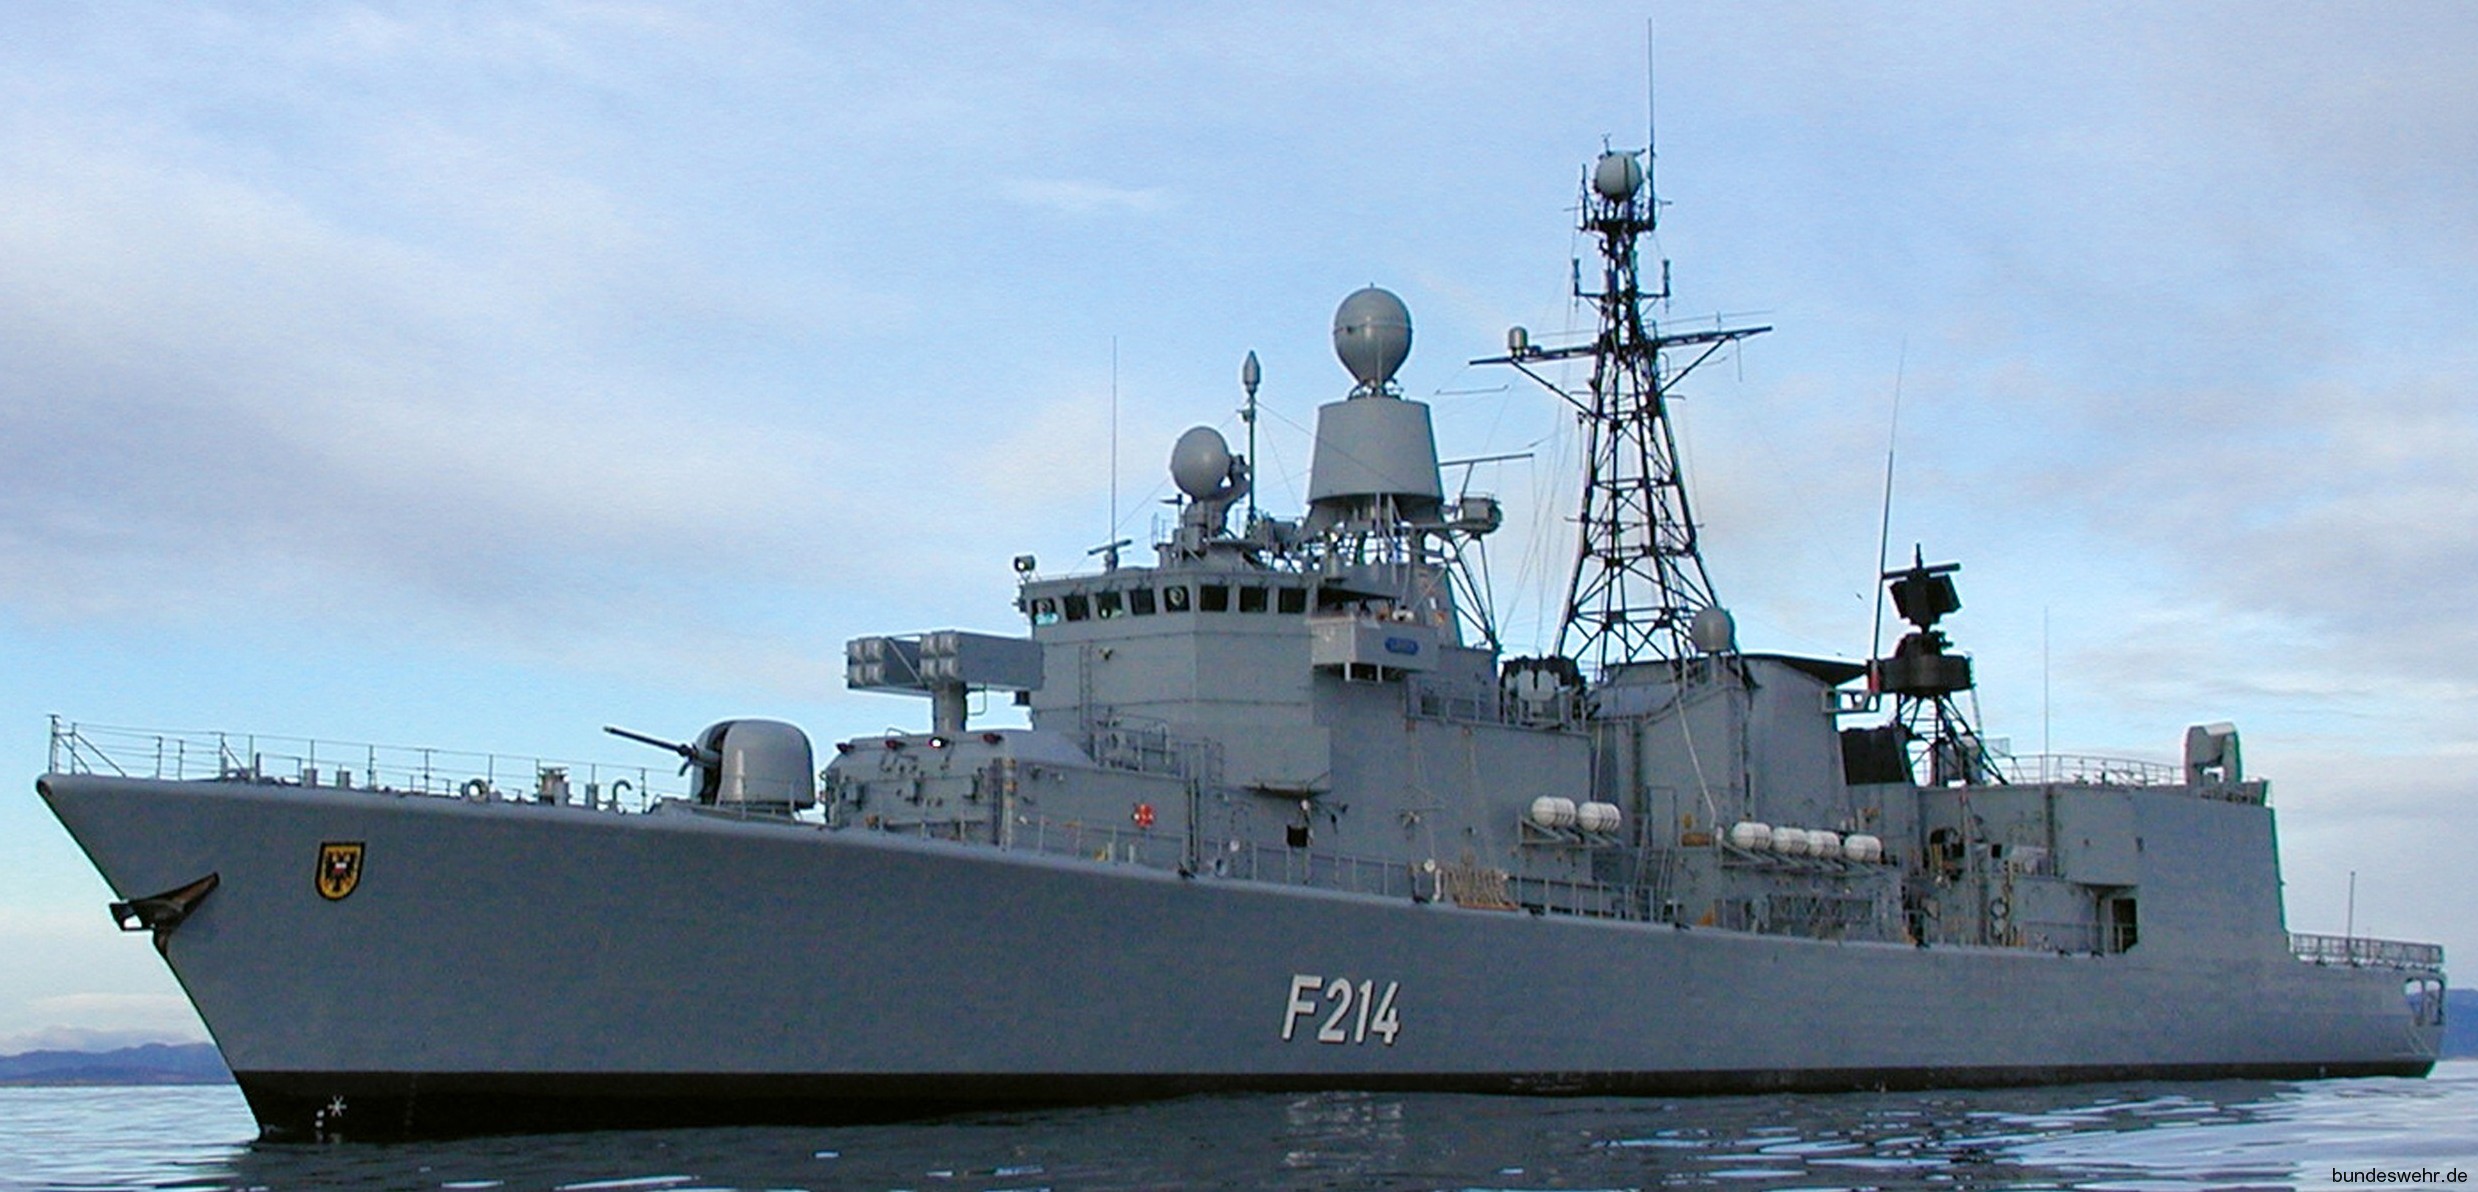 f-214 fgs lübeck type 122 bremen class frigate german navy deutsche marine fregatte 30